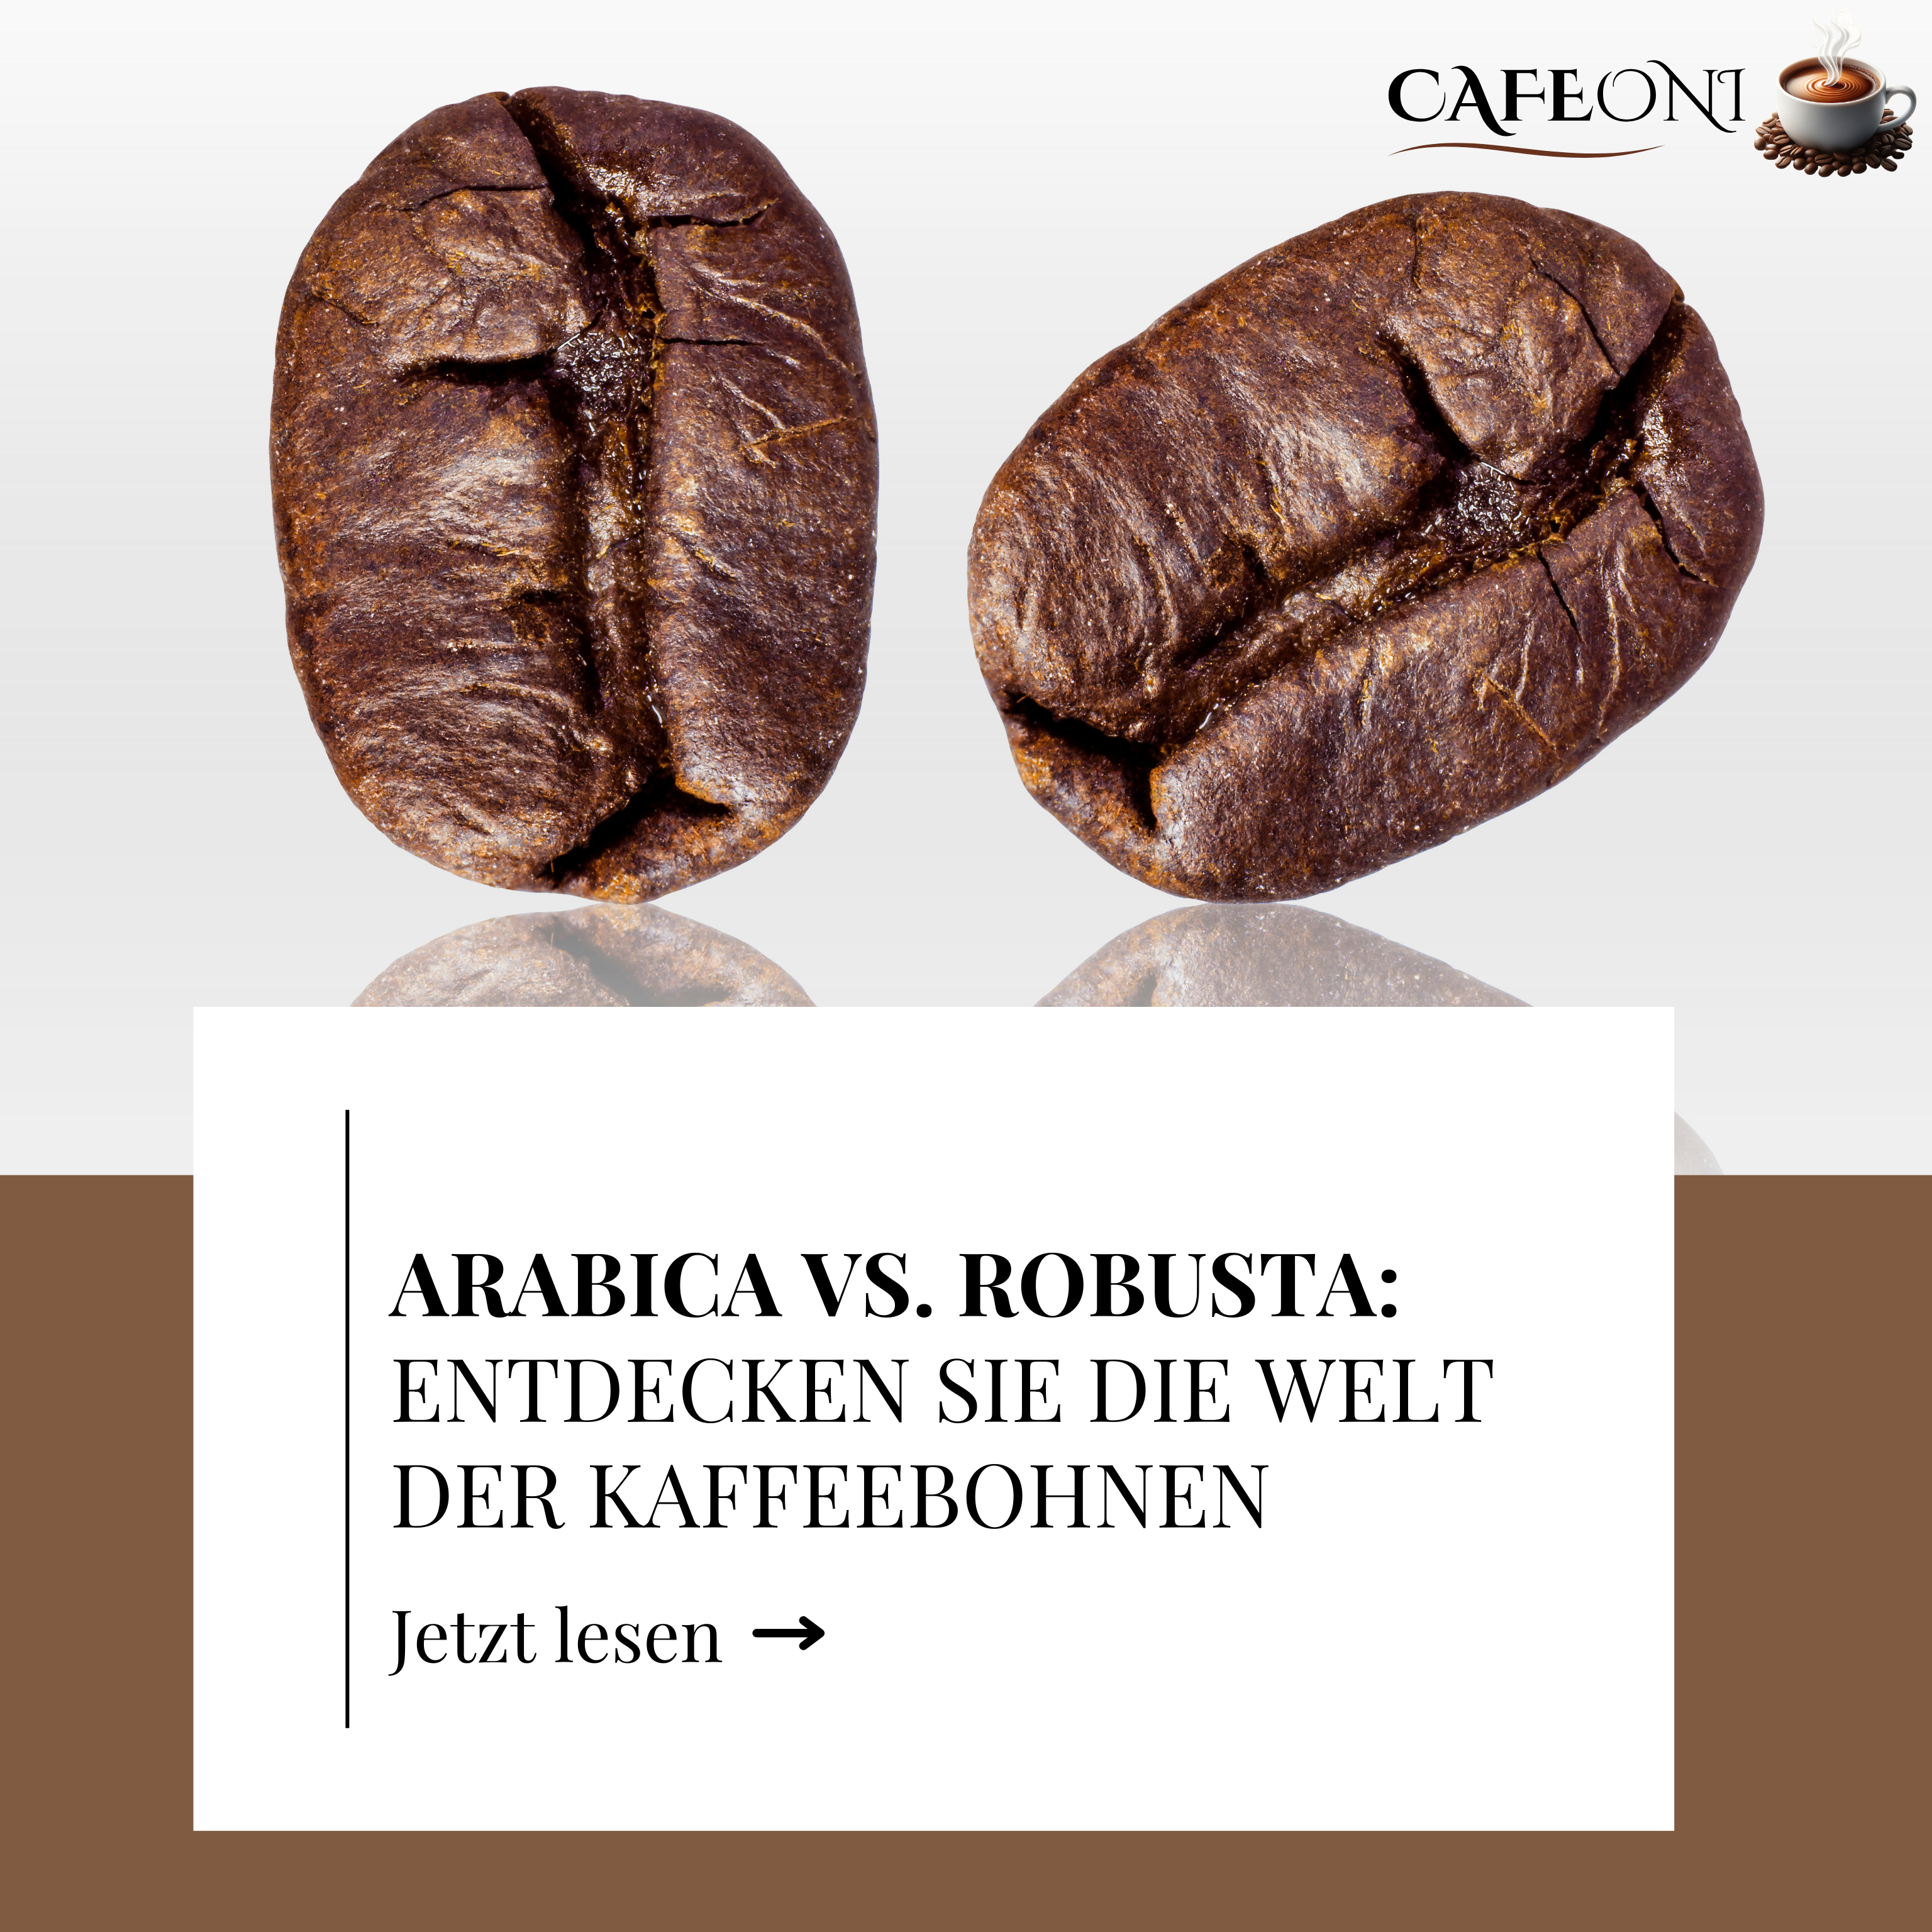 Arabica vs. Robusta: Entdecken Sie die Welt der Kaffeebohnen